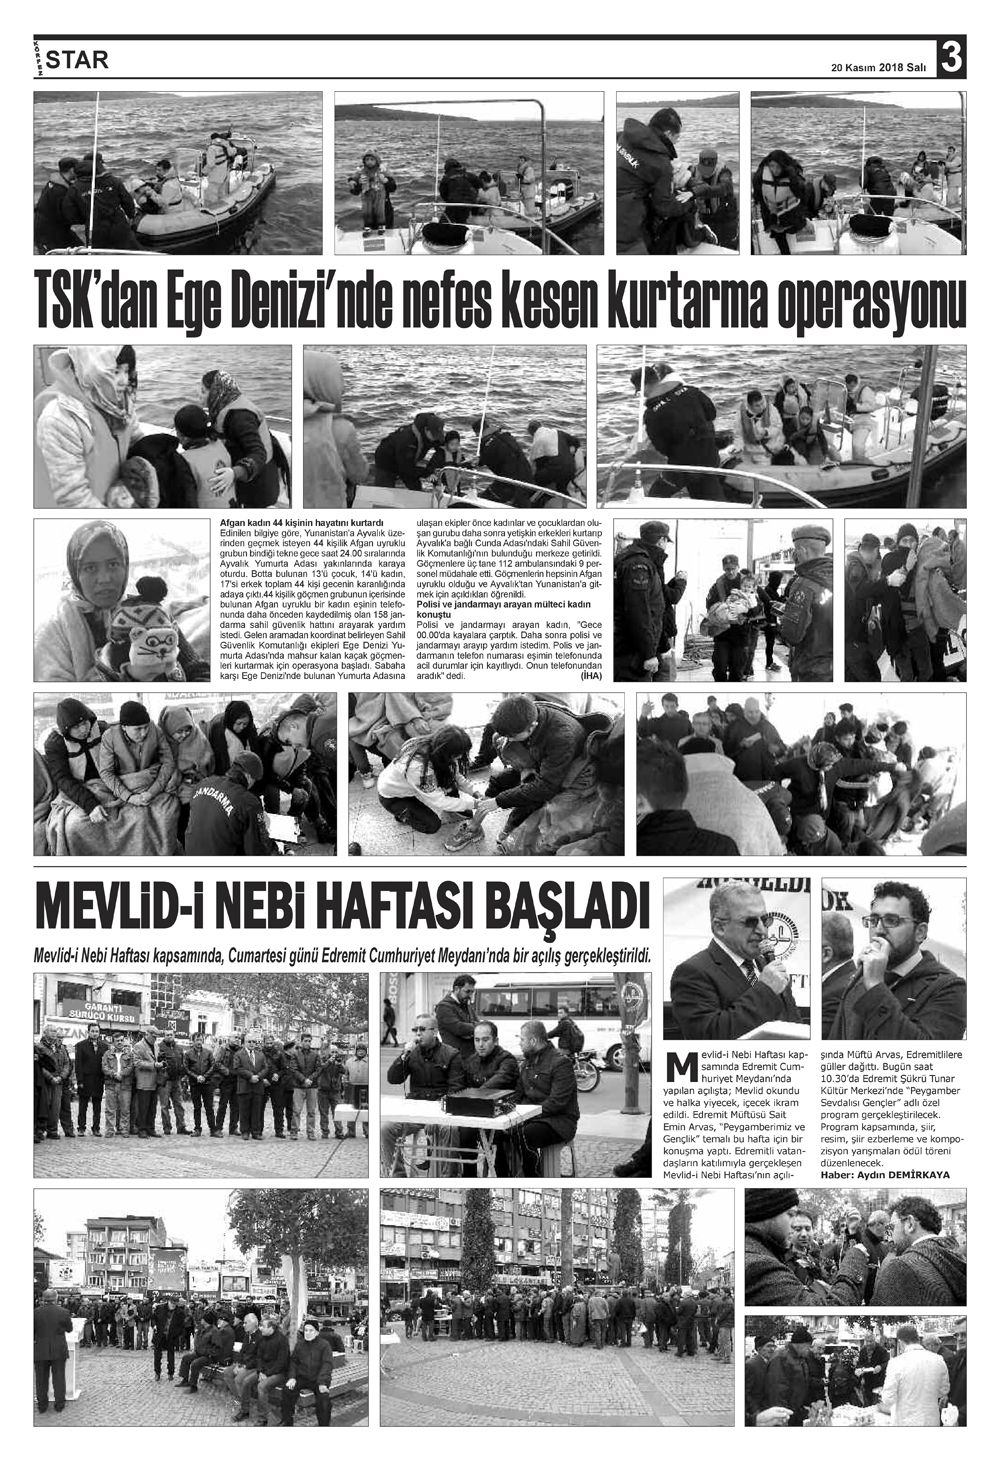 20112018-tarihli-gazetemiz-3118-11-19071533.jpg